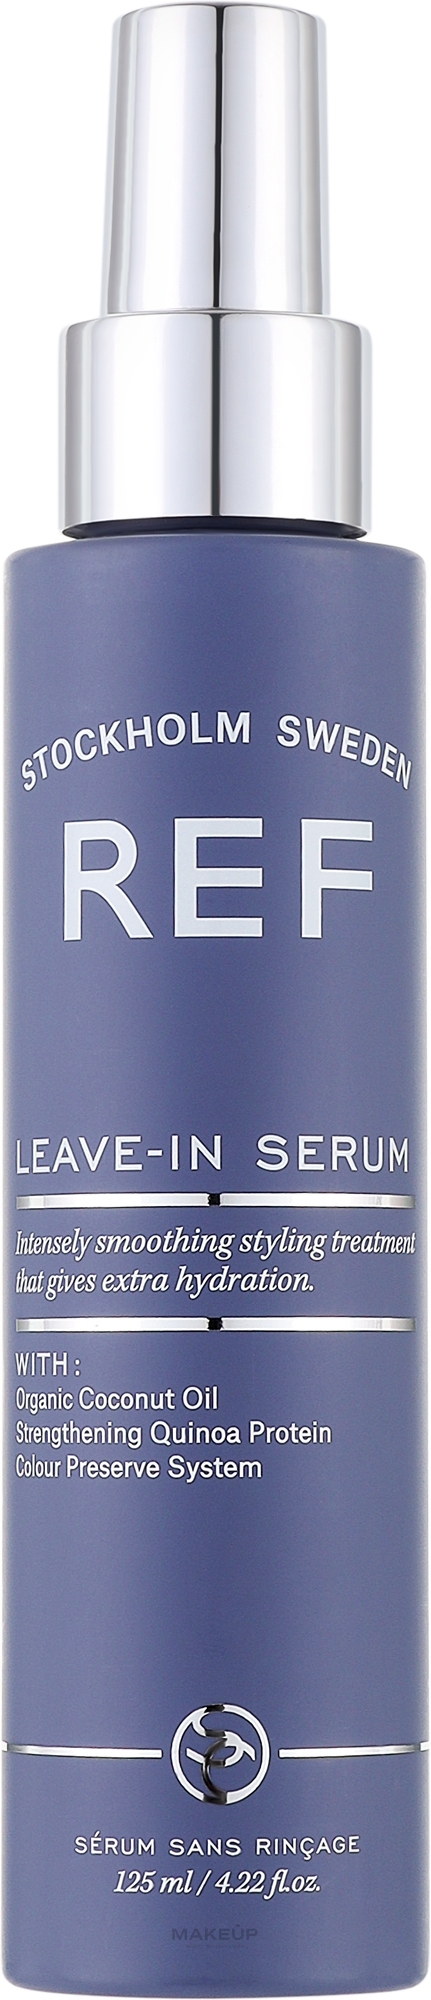 Leave-in-Stylingserum mit Proteinen und Pflanzenextrakten - REF Leave-In Serum — Bild 125 ml